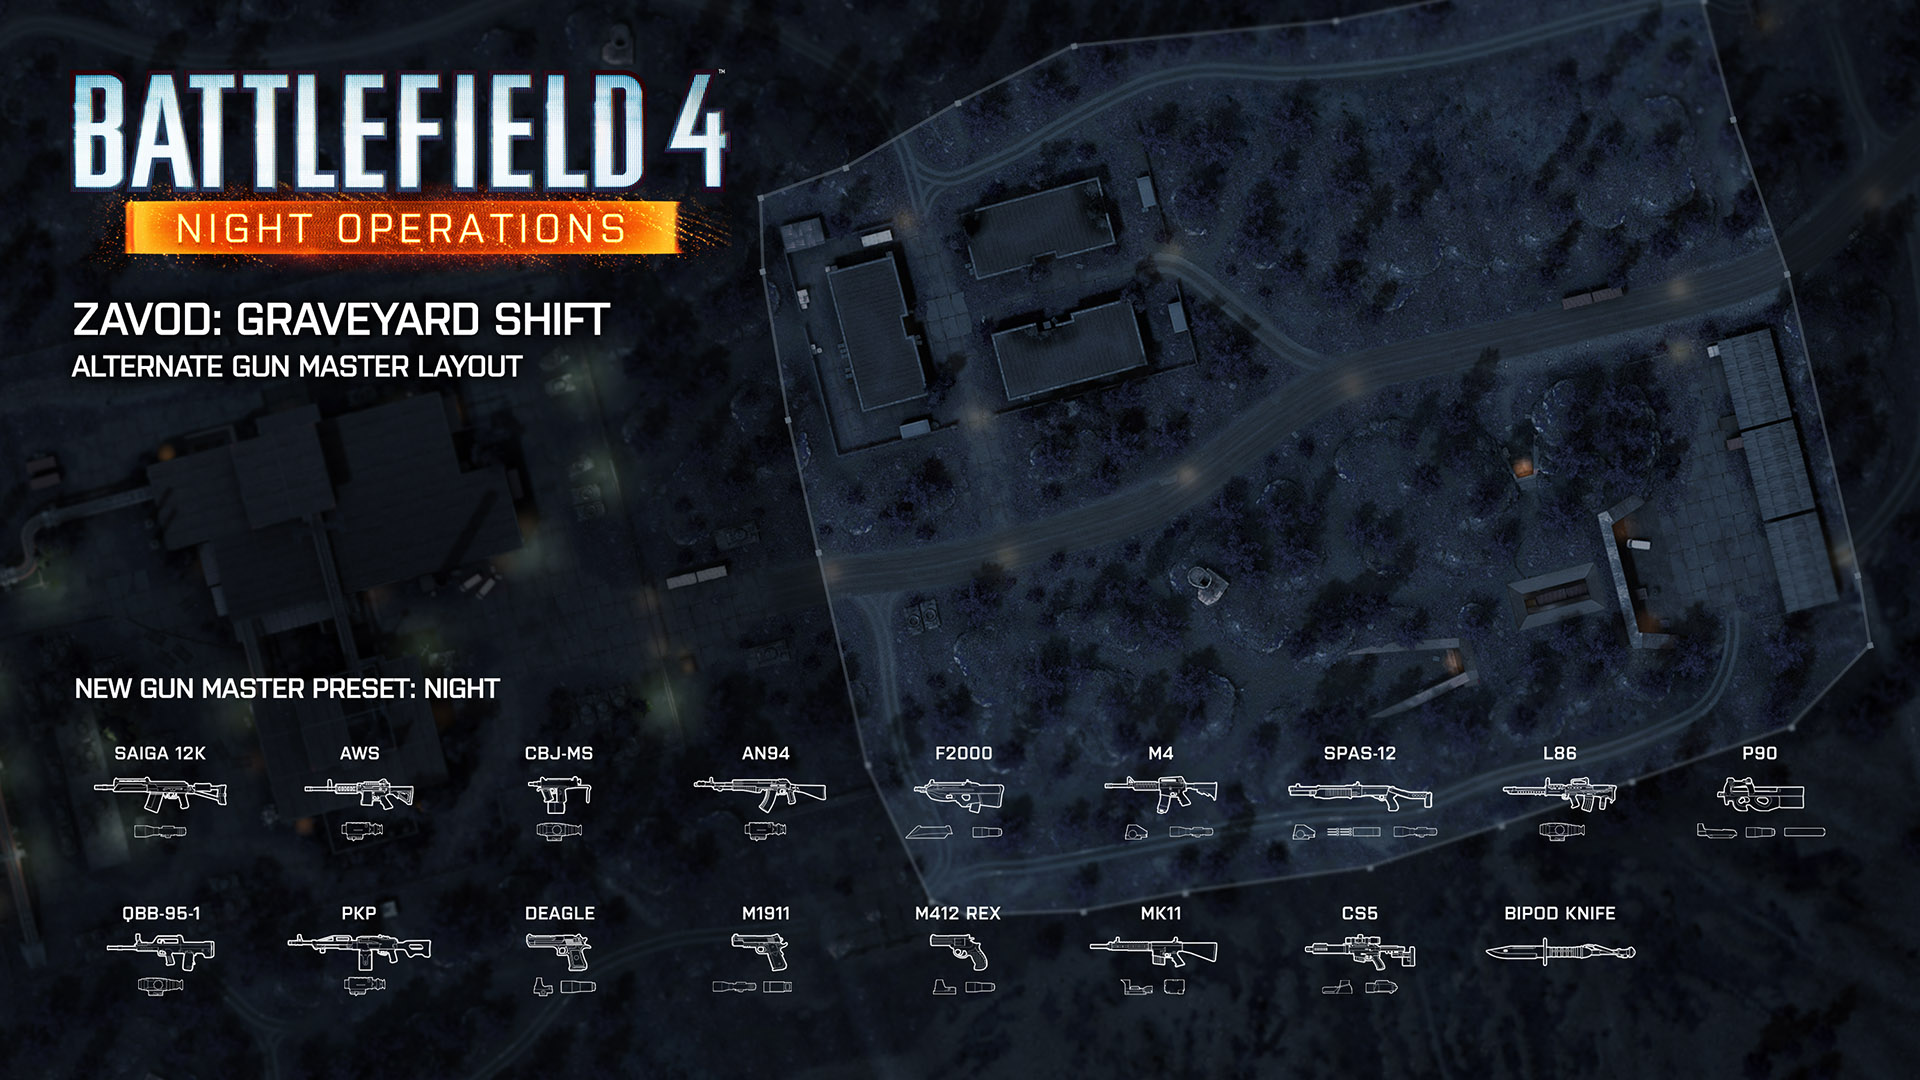 Battlefield 4 Night Operations Tactical Strategy Guide News Battlelog Battlefield 4